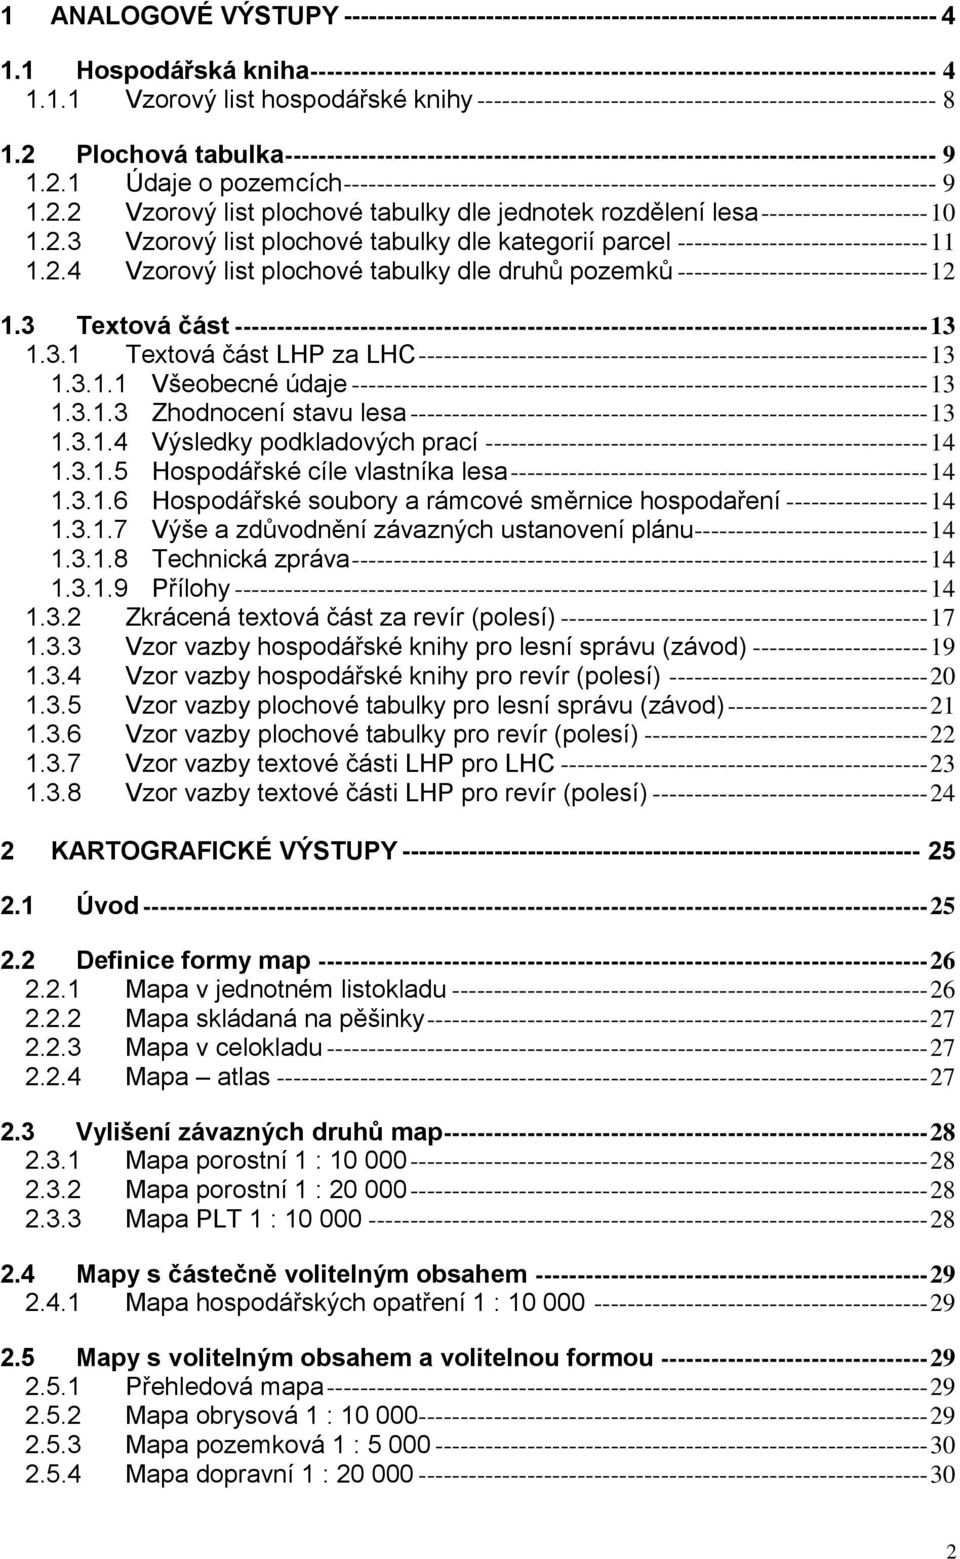 2.2 Vzorový list plochové tabulky dle jednotek rozdělení lesa -------------------- 10 1.2.3 Vzorový list plochové tabulky dle kategorií parcel ------------------------------ 11 1.2.4 Vzorový list plochové tabulky dle druhů pozemků ------------------------------ 12 1.